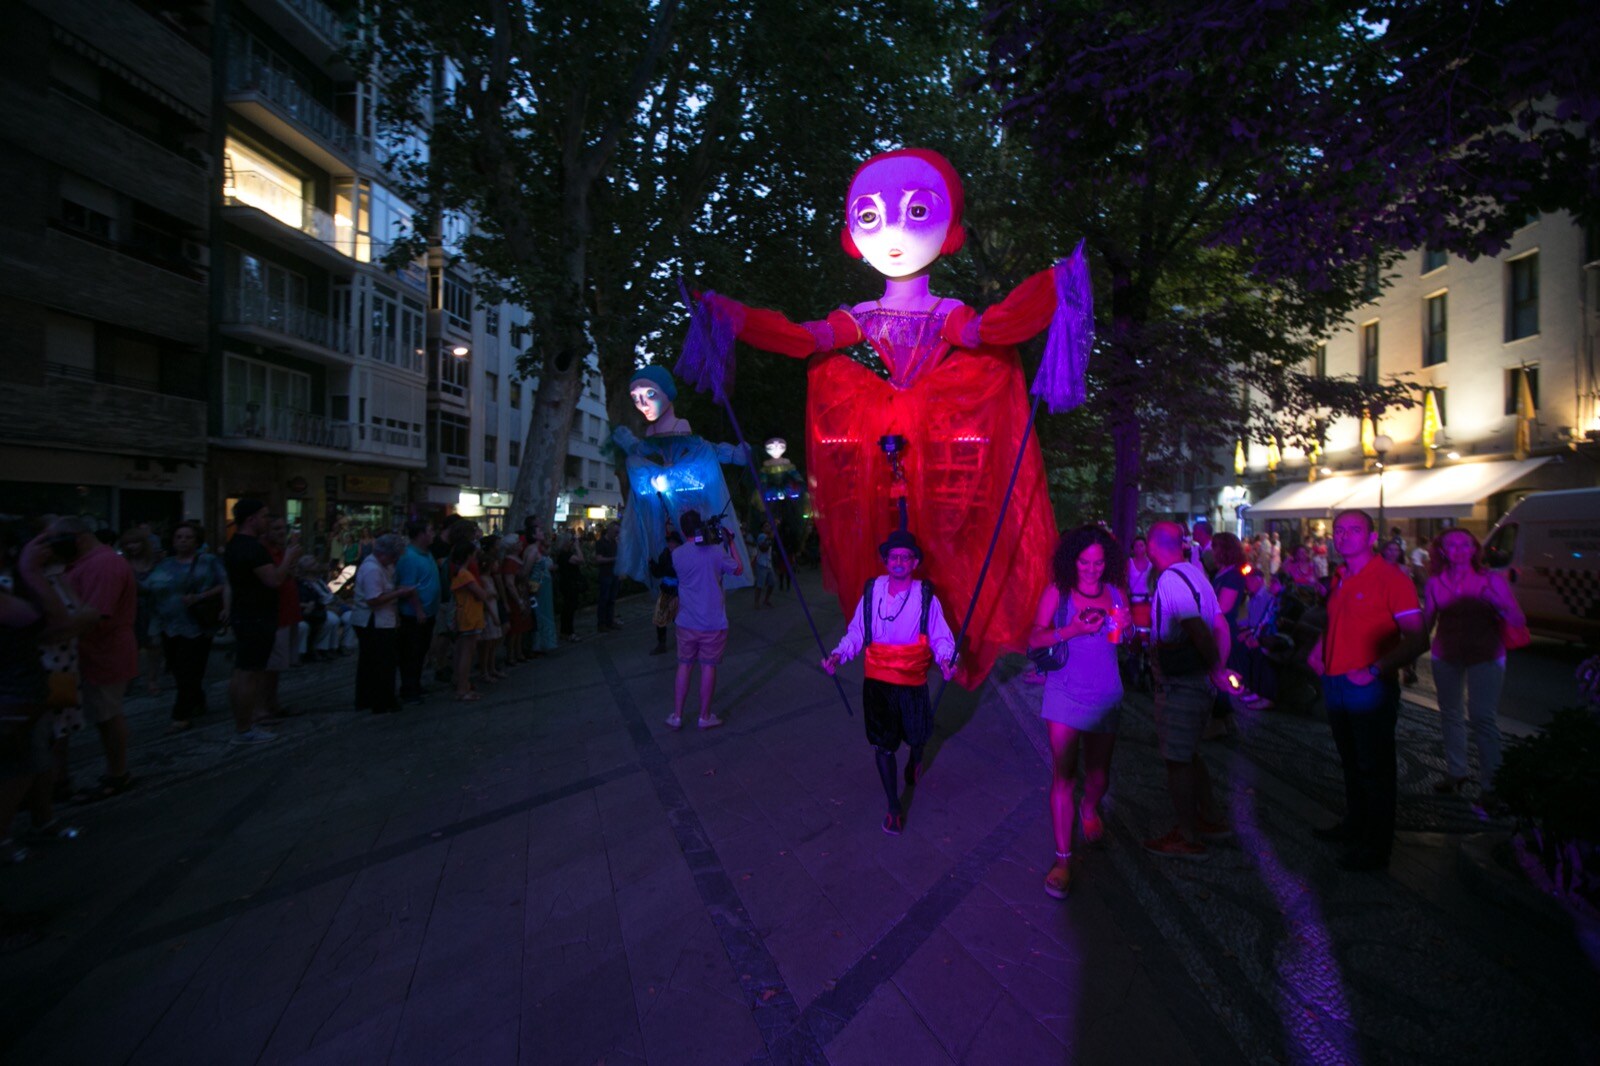 La compañía Yera Teatro presentó ayer su espectáculo 'Meninas', un pasacalles realizado con marionetas gigantes, y que se paseó por el centro de la capital, desde la fuente de las Granadas a la plaza de las Pasiegas